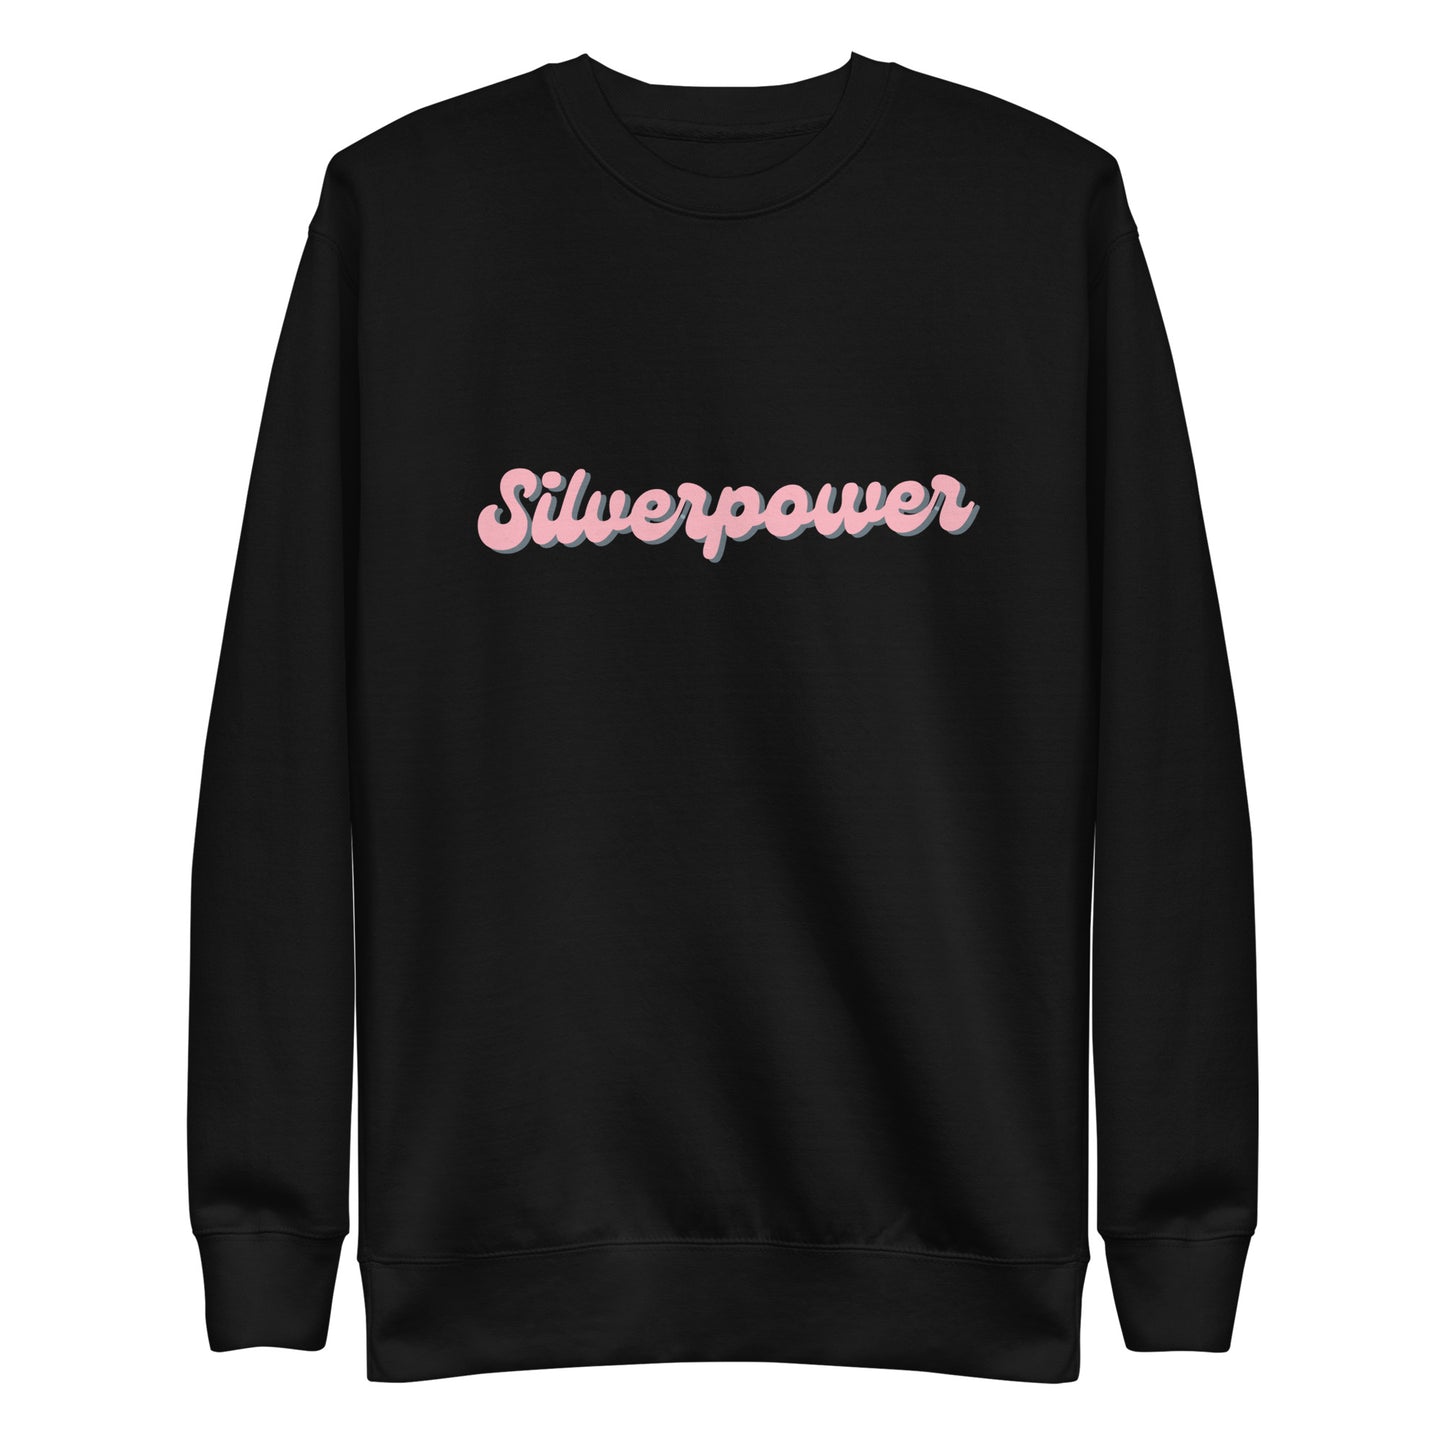 Silverpower Sweatshirt | Art in Aging